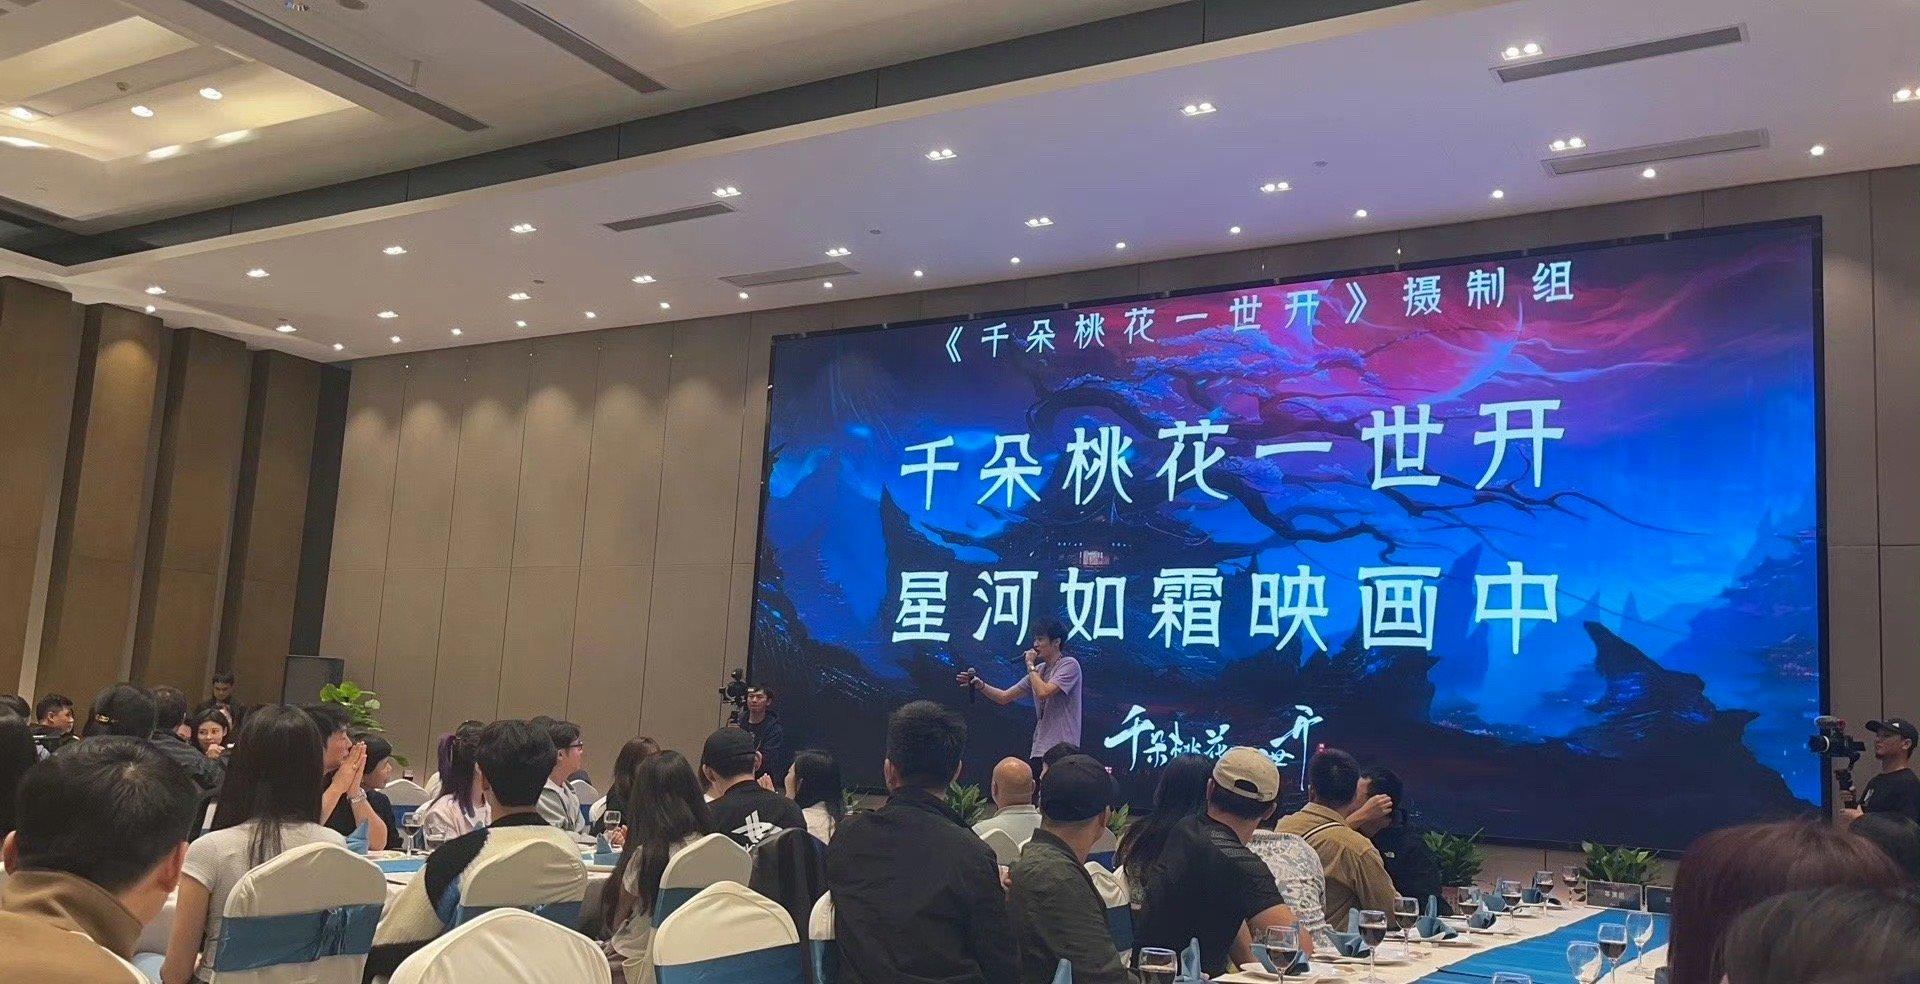 Thiên Đóa Đào Hoa Nhất Thế Khai tổ chức tiệc khai máy linh đình trong ngày khai máy 8/10/2023 (Nguồn: internet)